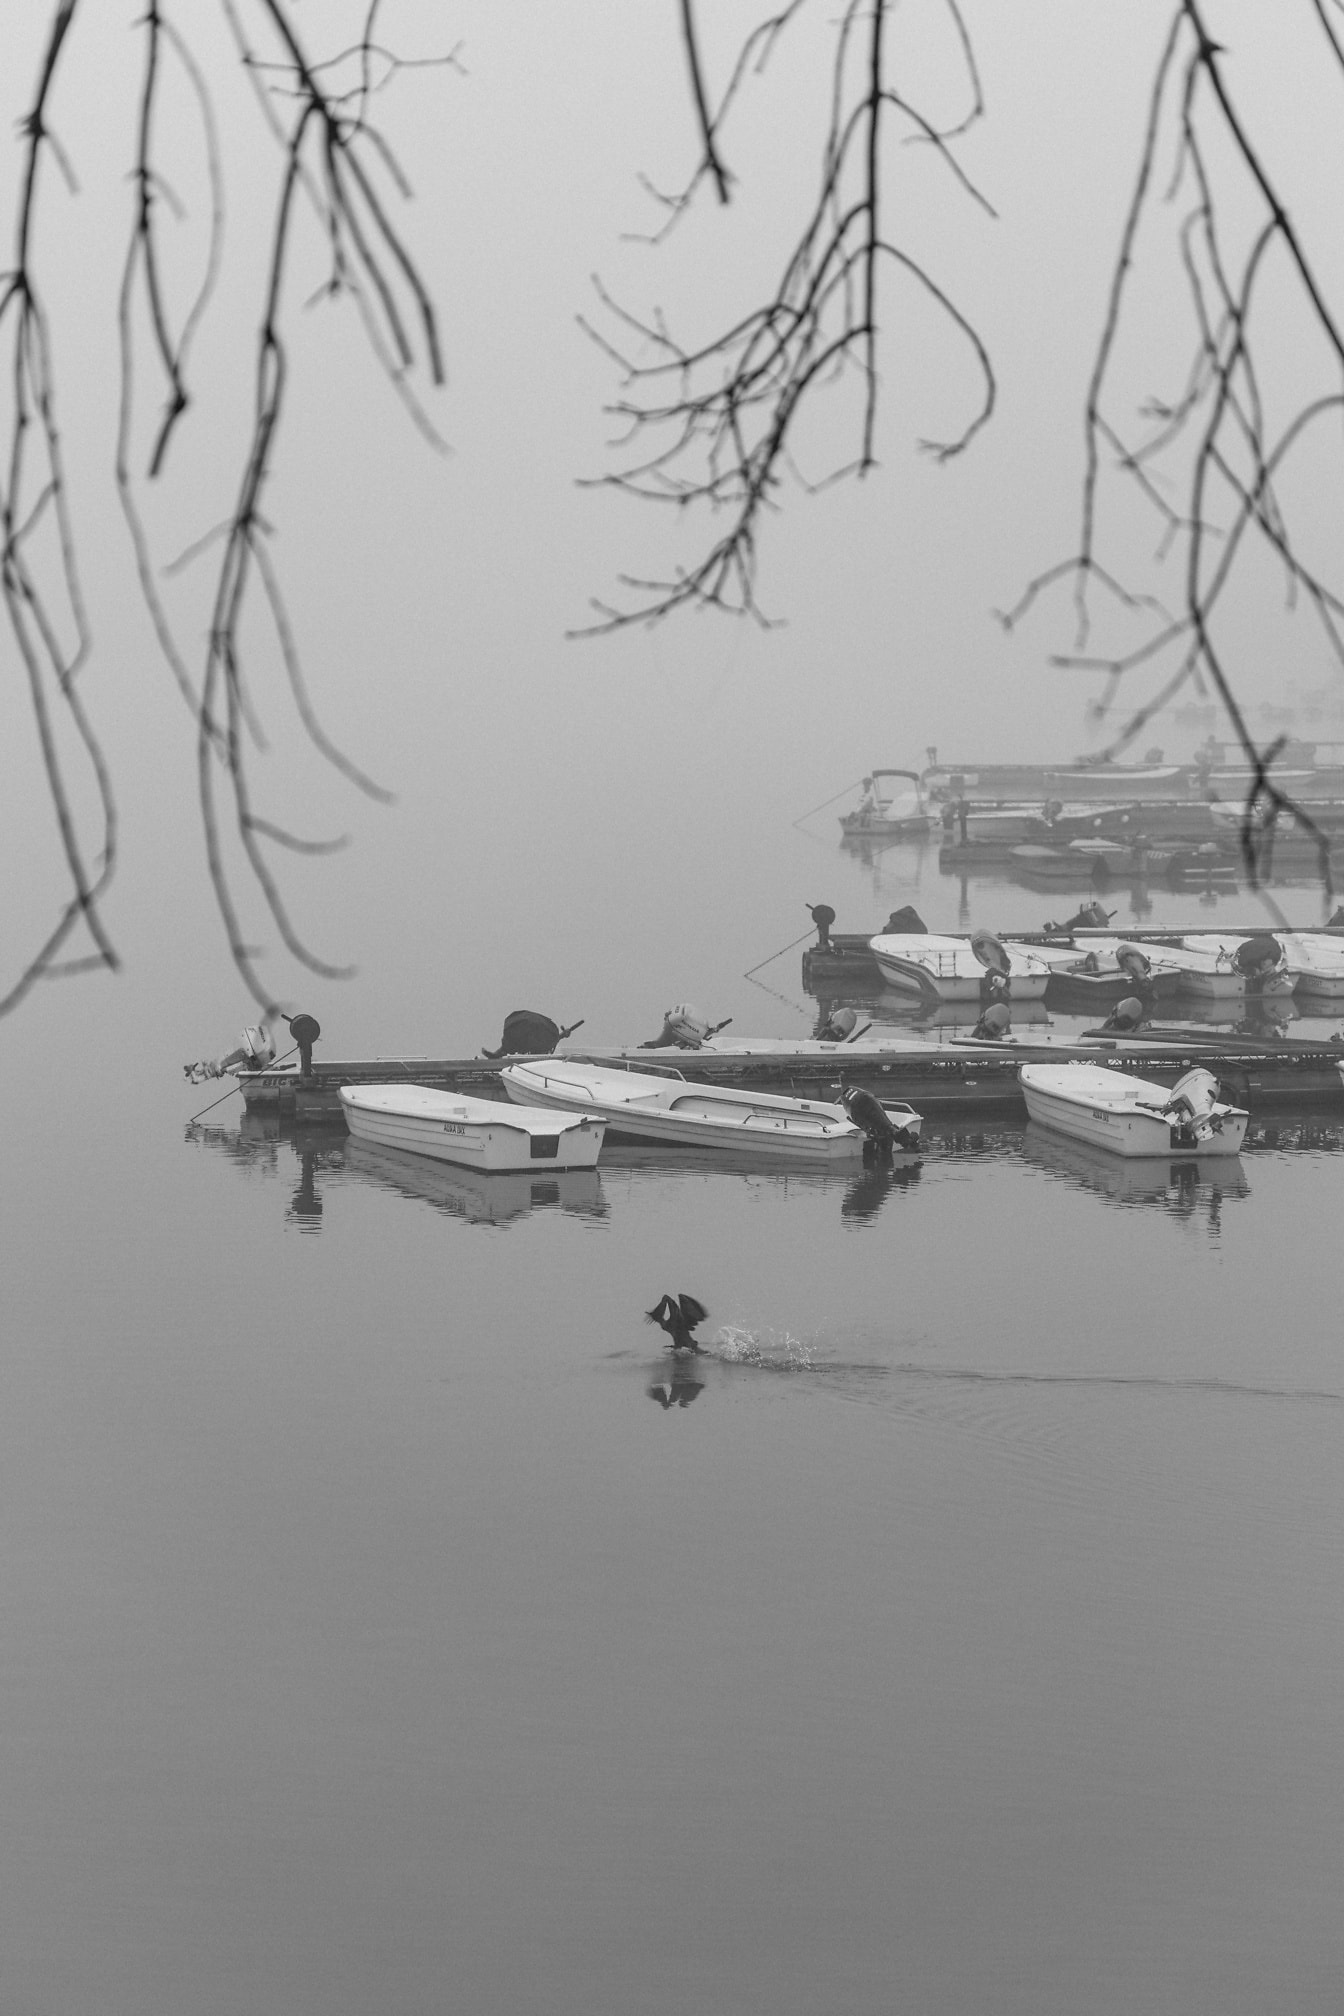 Foto in bianco e nero di un gruppo di piccole barche da pesca su un lago in nebbia densa